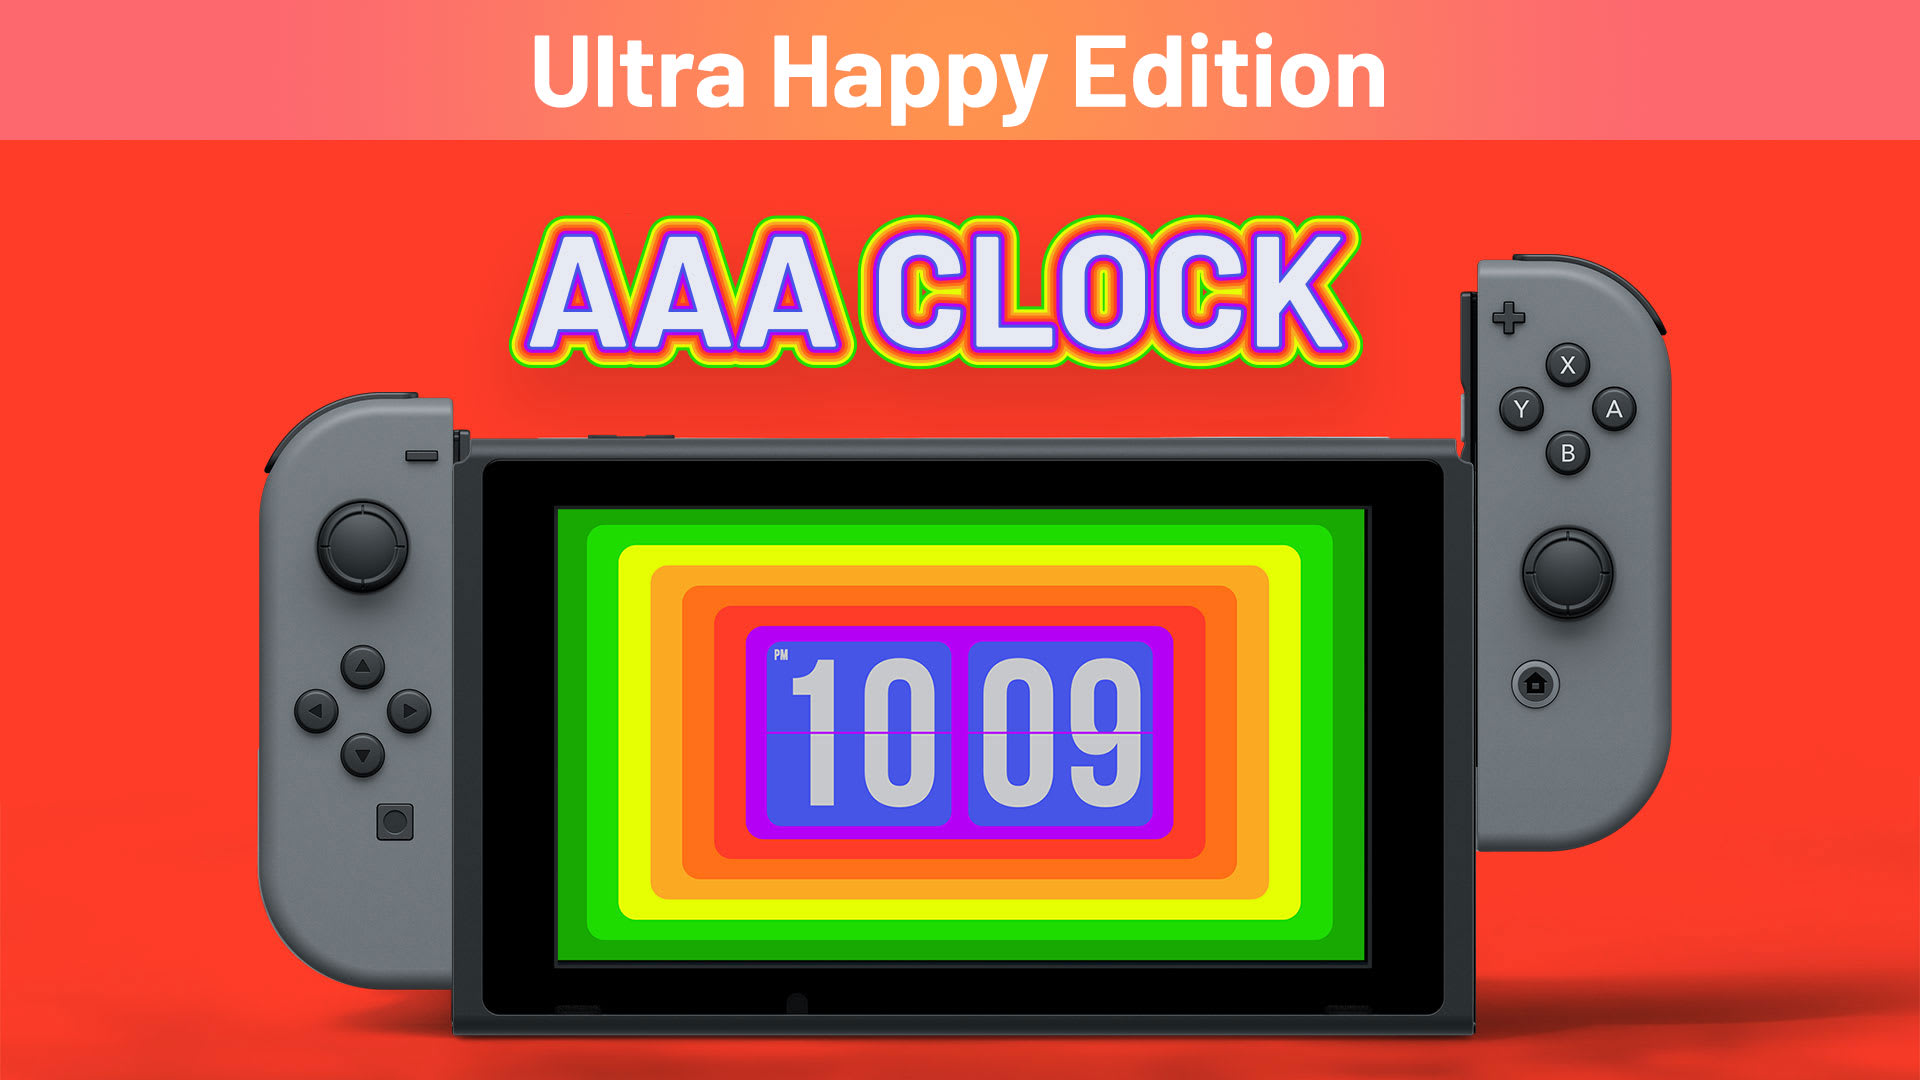 AAA Clock Ultra Happy Edition